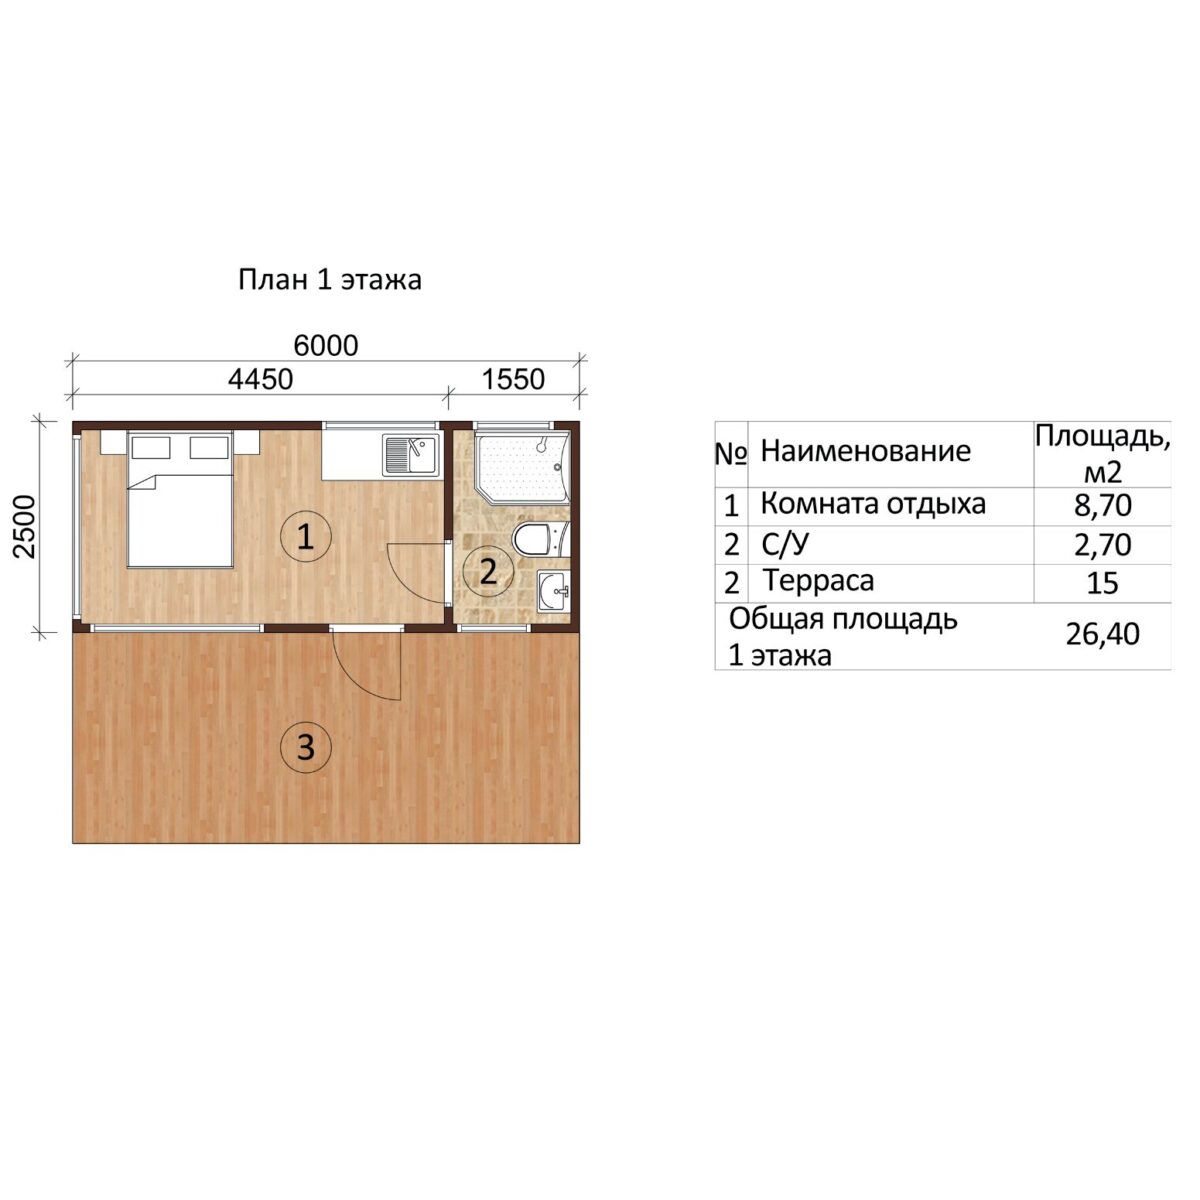 План этажа модульного дома "М-1" производства Пеновской деревообрабатывающей фабрики